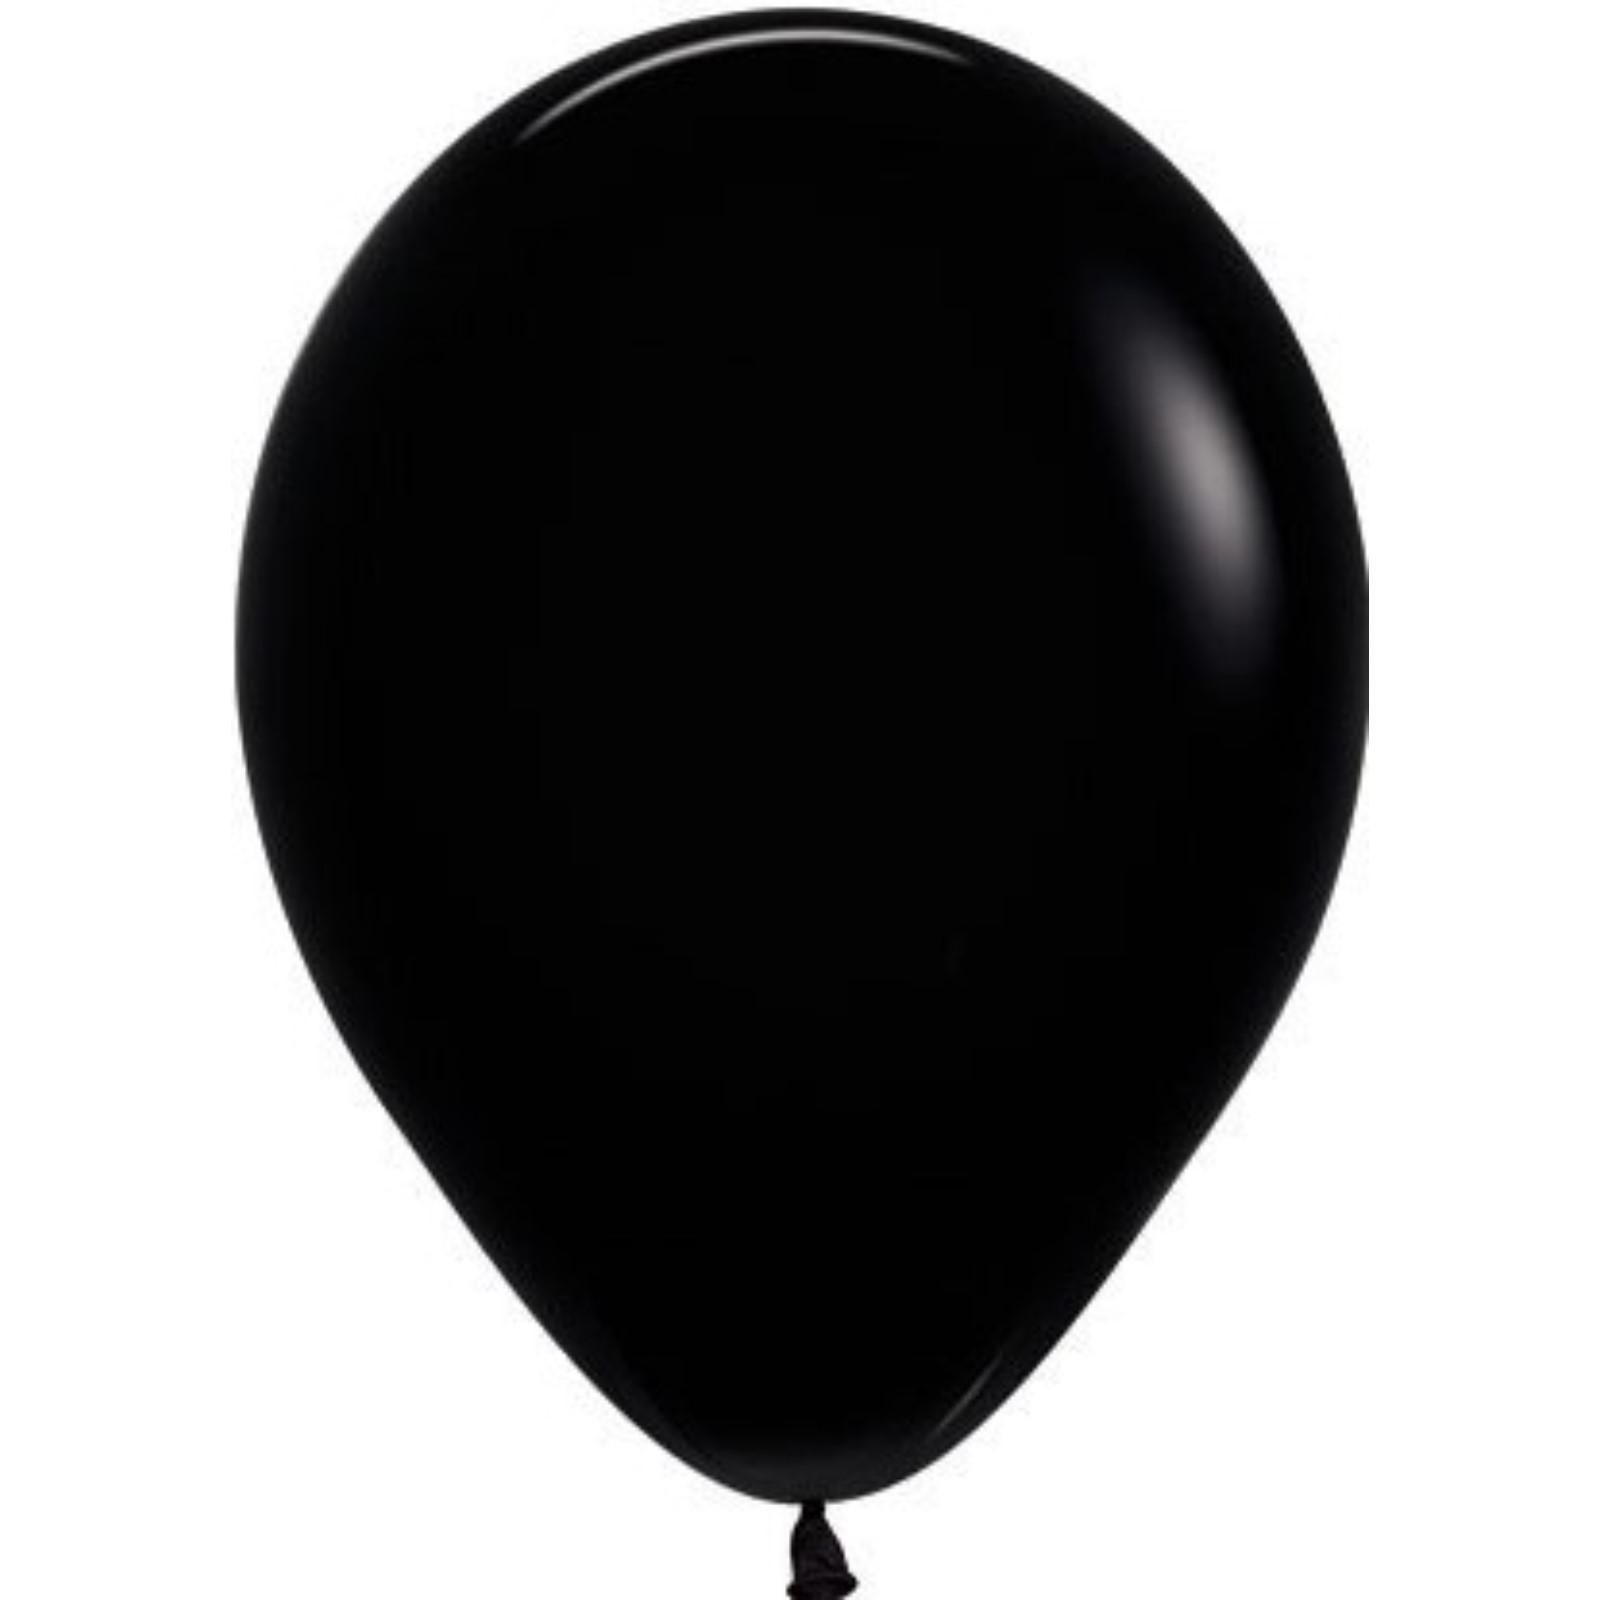 Черный воздушный шарик. Черный шарик. Шар черный латексный. Шар черный латекс. Черный воздушный шар.